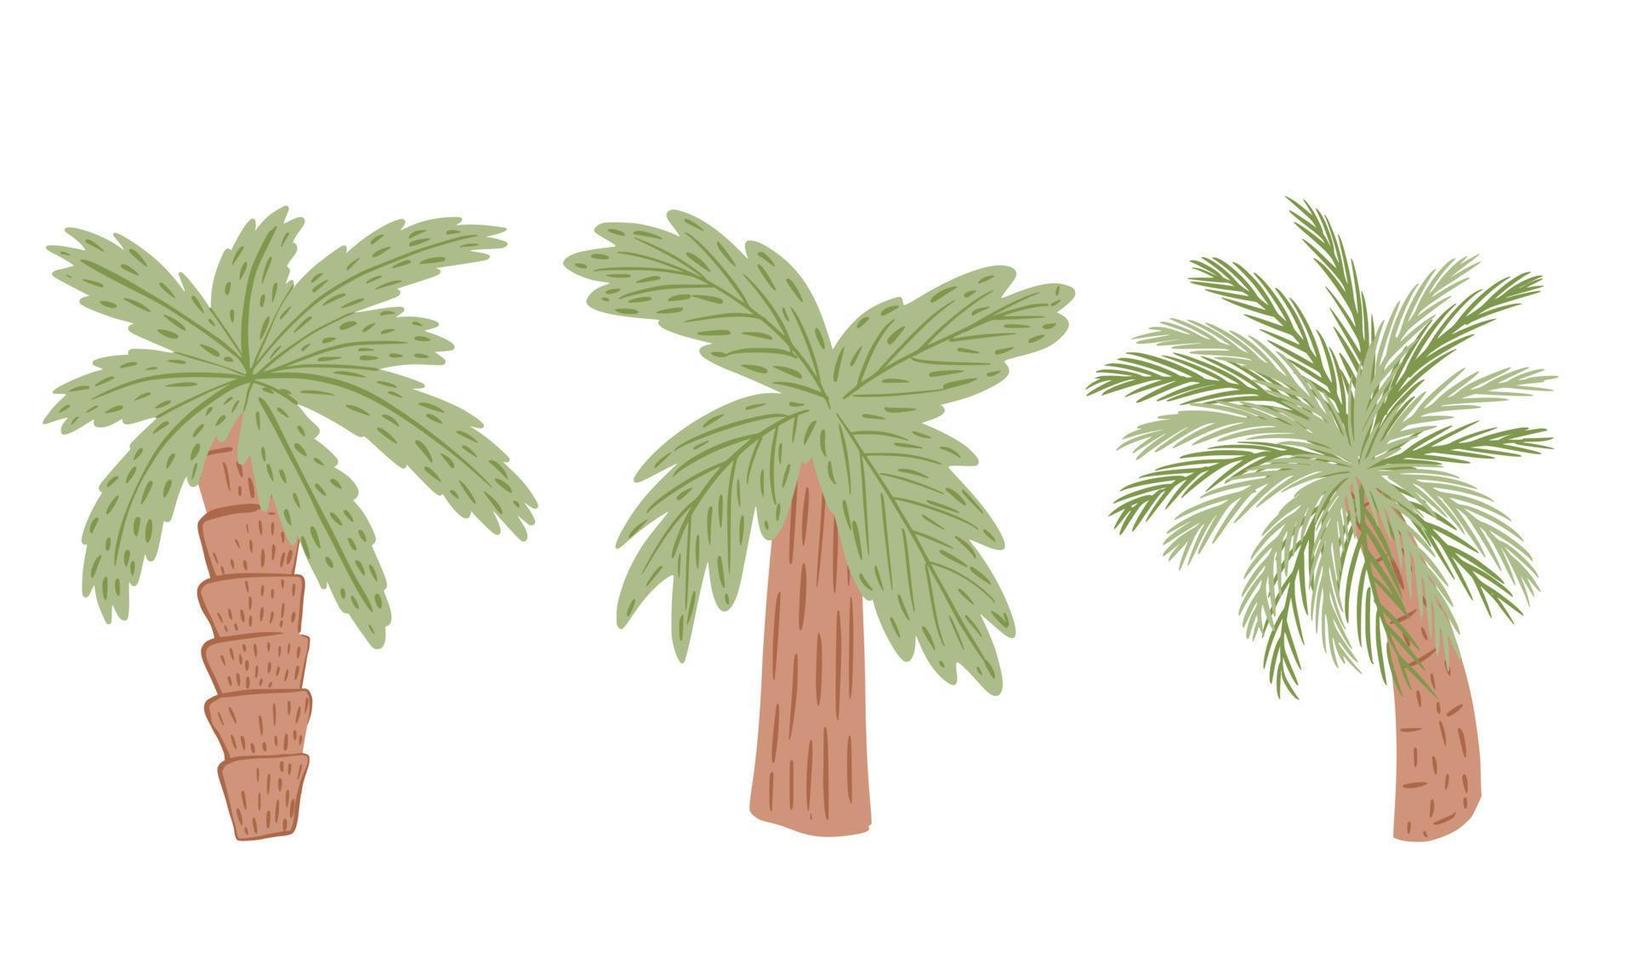 impostare palme isolati su sfondo bianco. pianta tropicale astratta con fogliame verde e tronco d'albero marrone. vettore